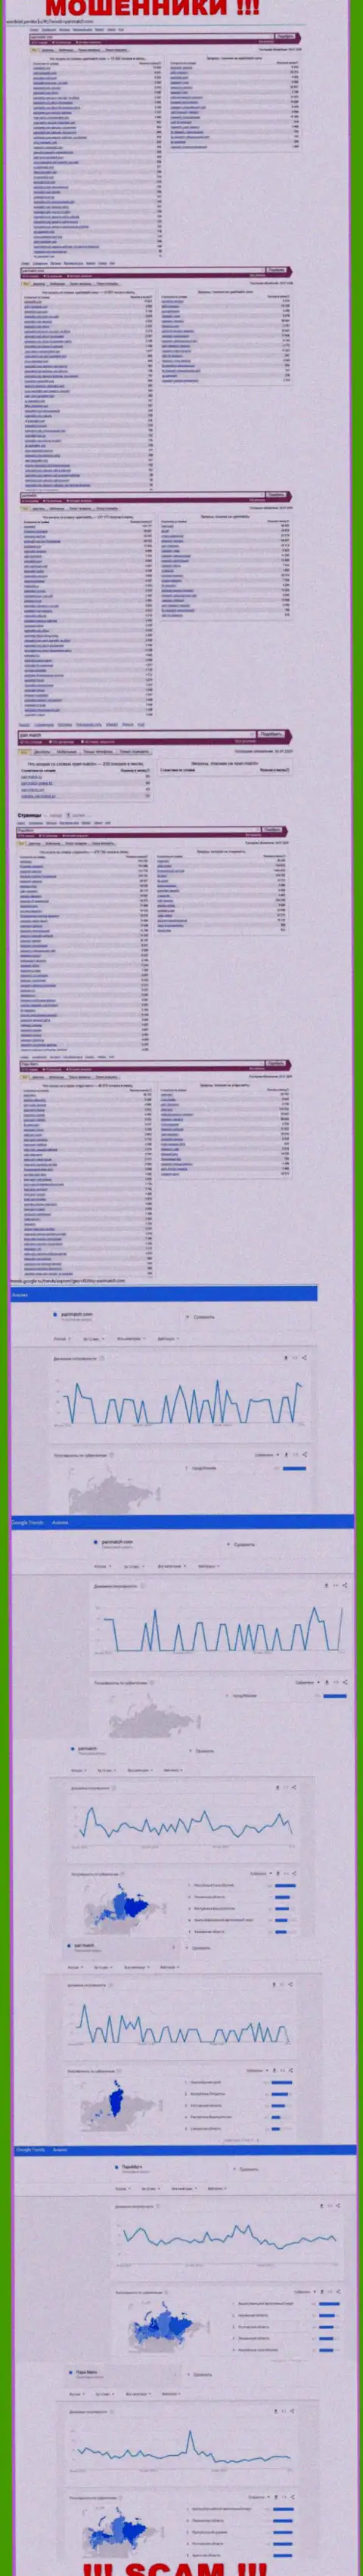 Количество поисковых запросов в поисковиках всемирной сети internet по бренду мошенников ПариМатч